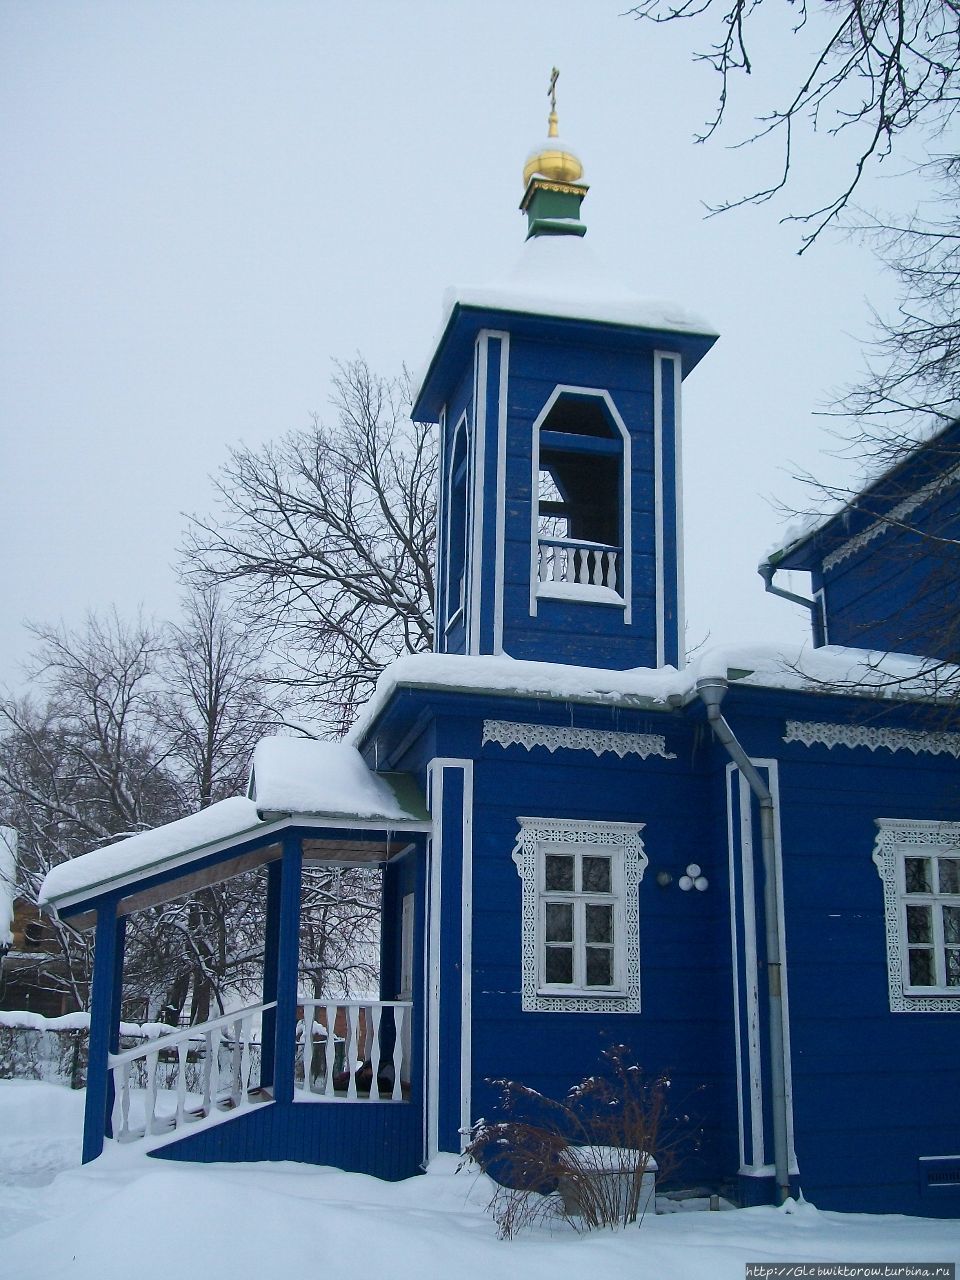 Зимний монастырь со множеством котов Дзержинский, Россия